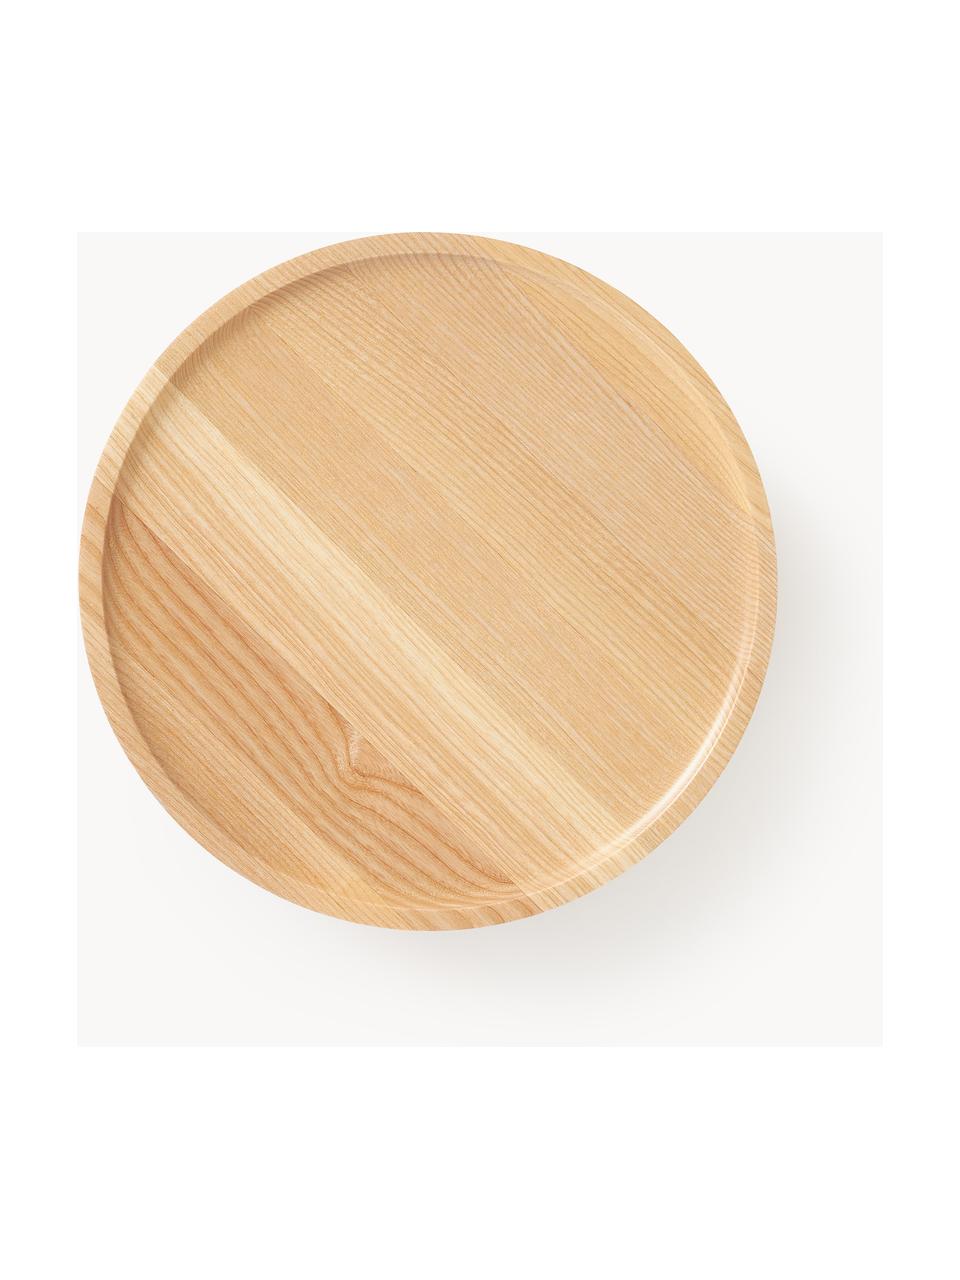 Dekorativní podnos z jasanového dřeva Keoni, Lakované jasanové dřevo

Tento produkt je vyroben z udržitelných zdrojů dřeva s certifikací FSC®., Jasanové dřevo, Ø 30 cm